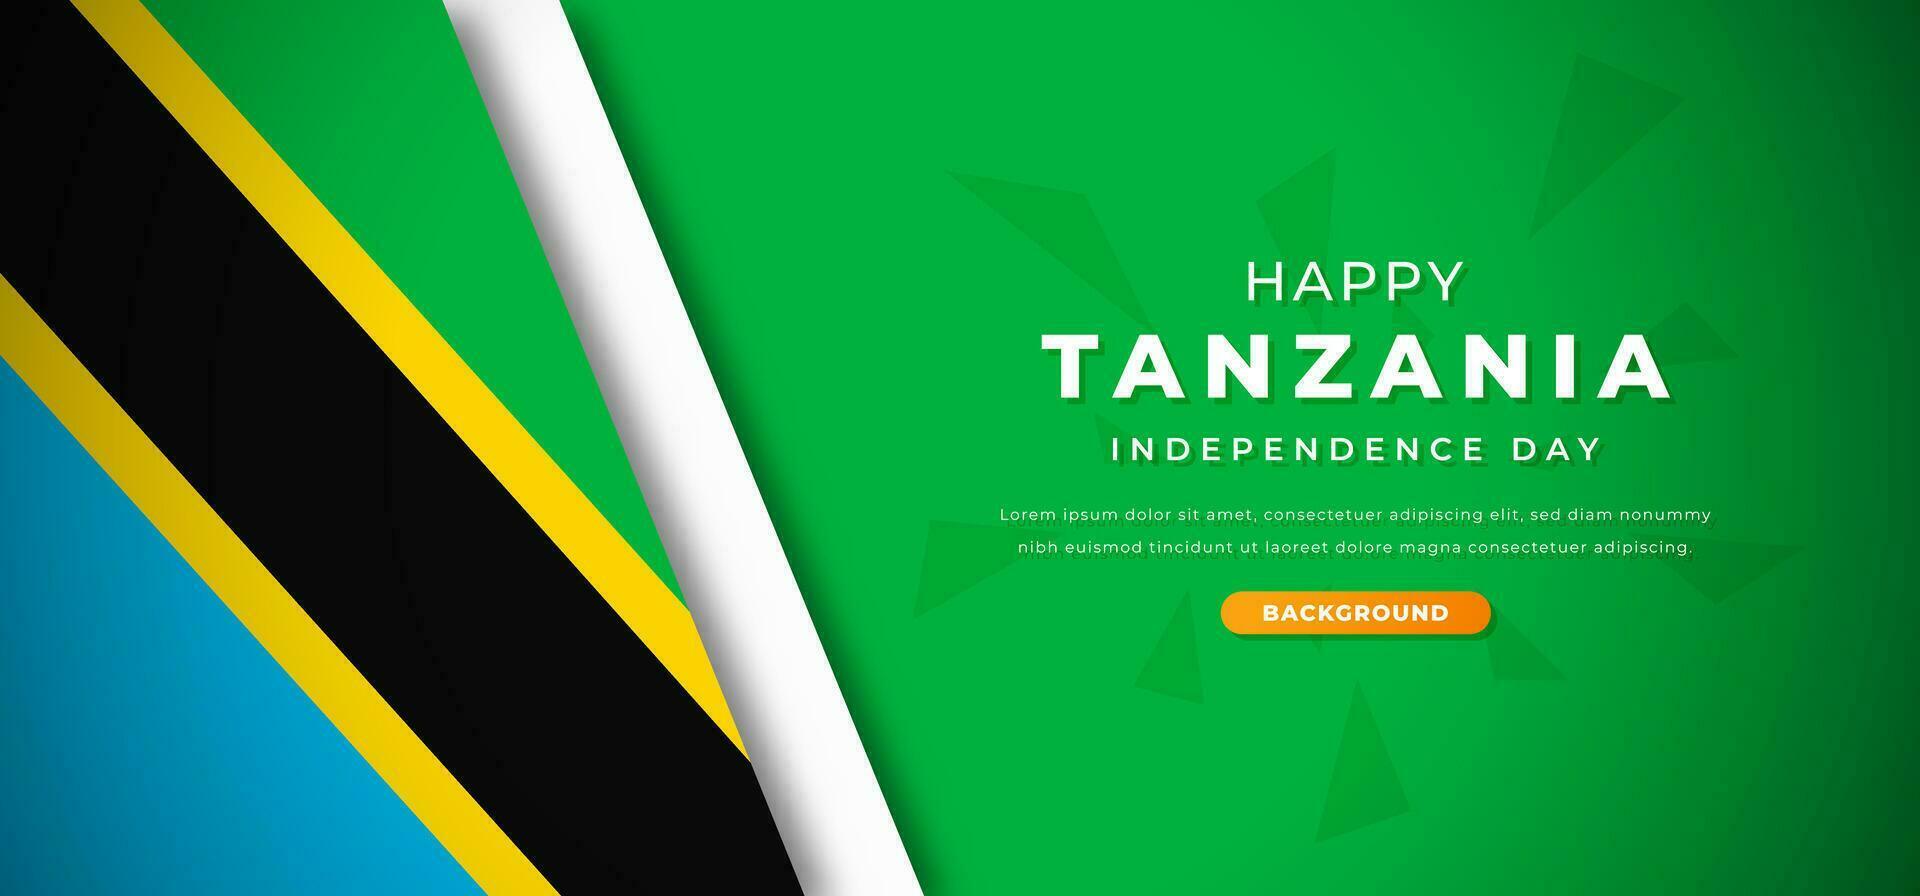 contento Tanzania independencia día diseño papel cortar formas antecedentes ilustración para póster, bandera, publicidad, saludo tarjeta vector